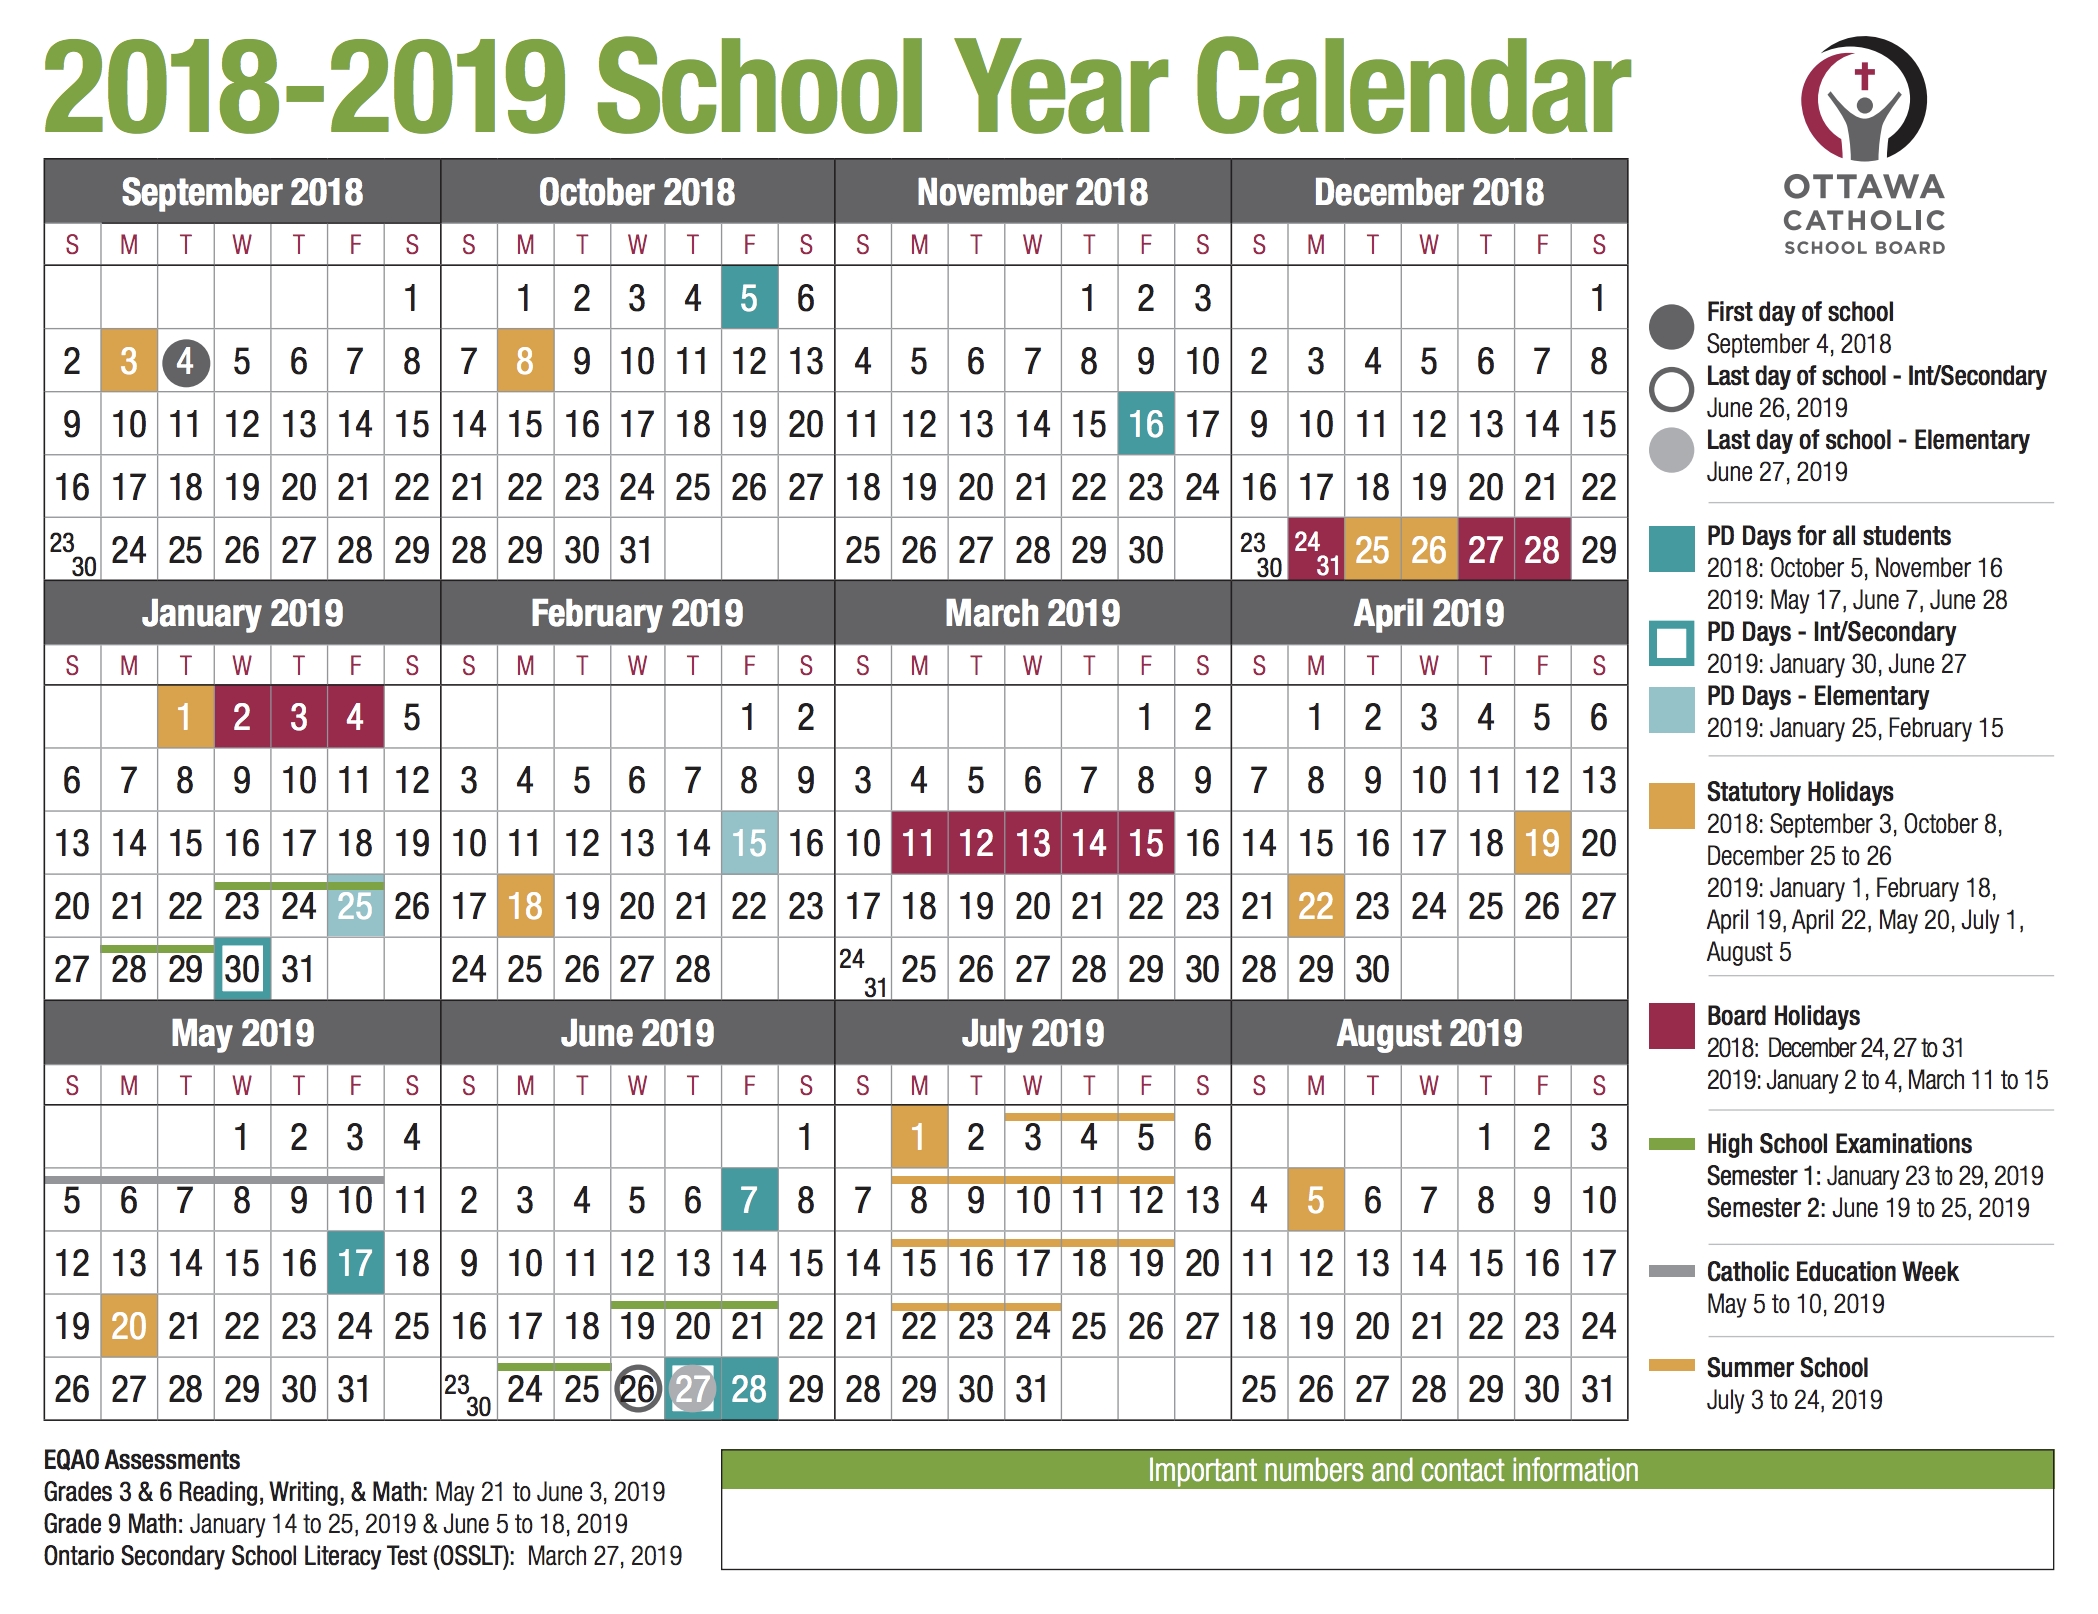 School Year Calendar From The Ocsb Region 7 School Calendar